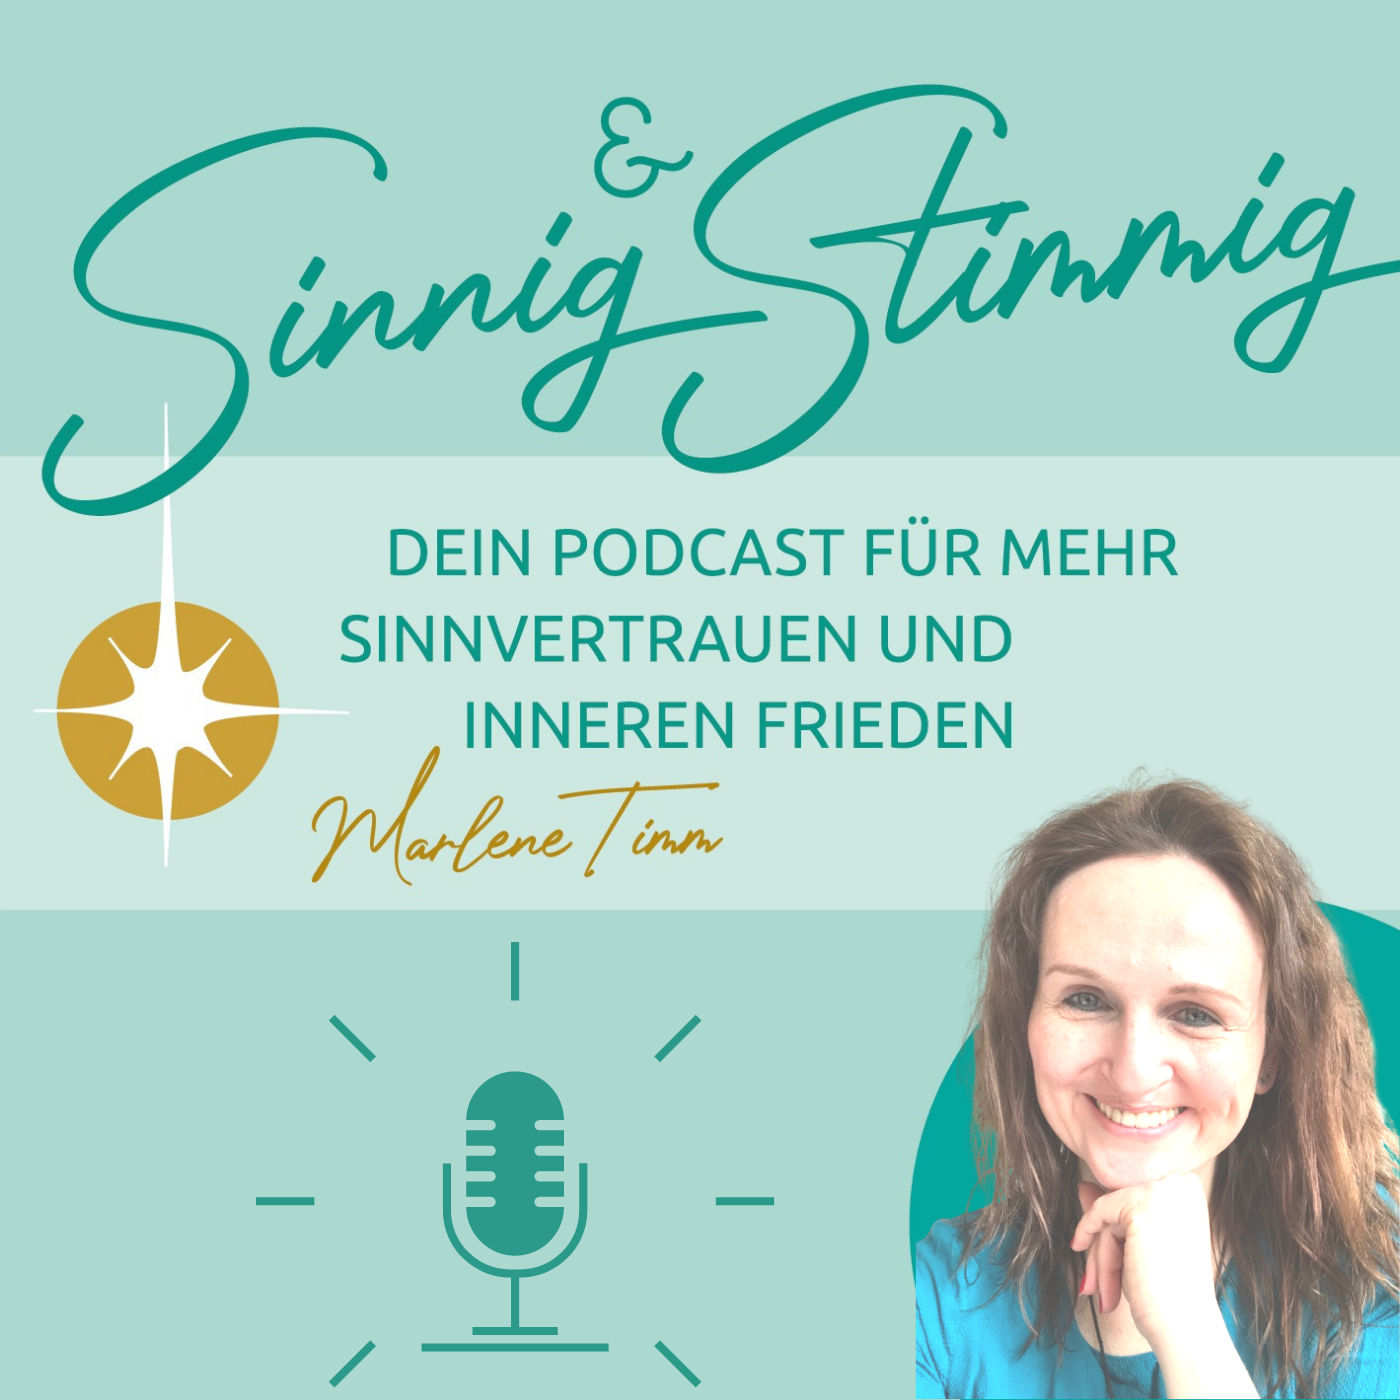 Sinnig und Stimmig - Podcast